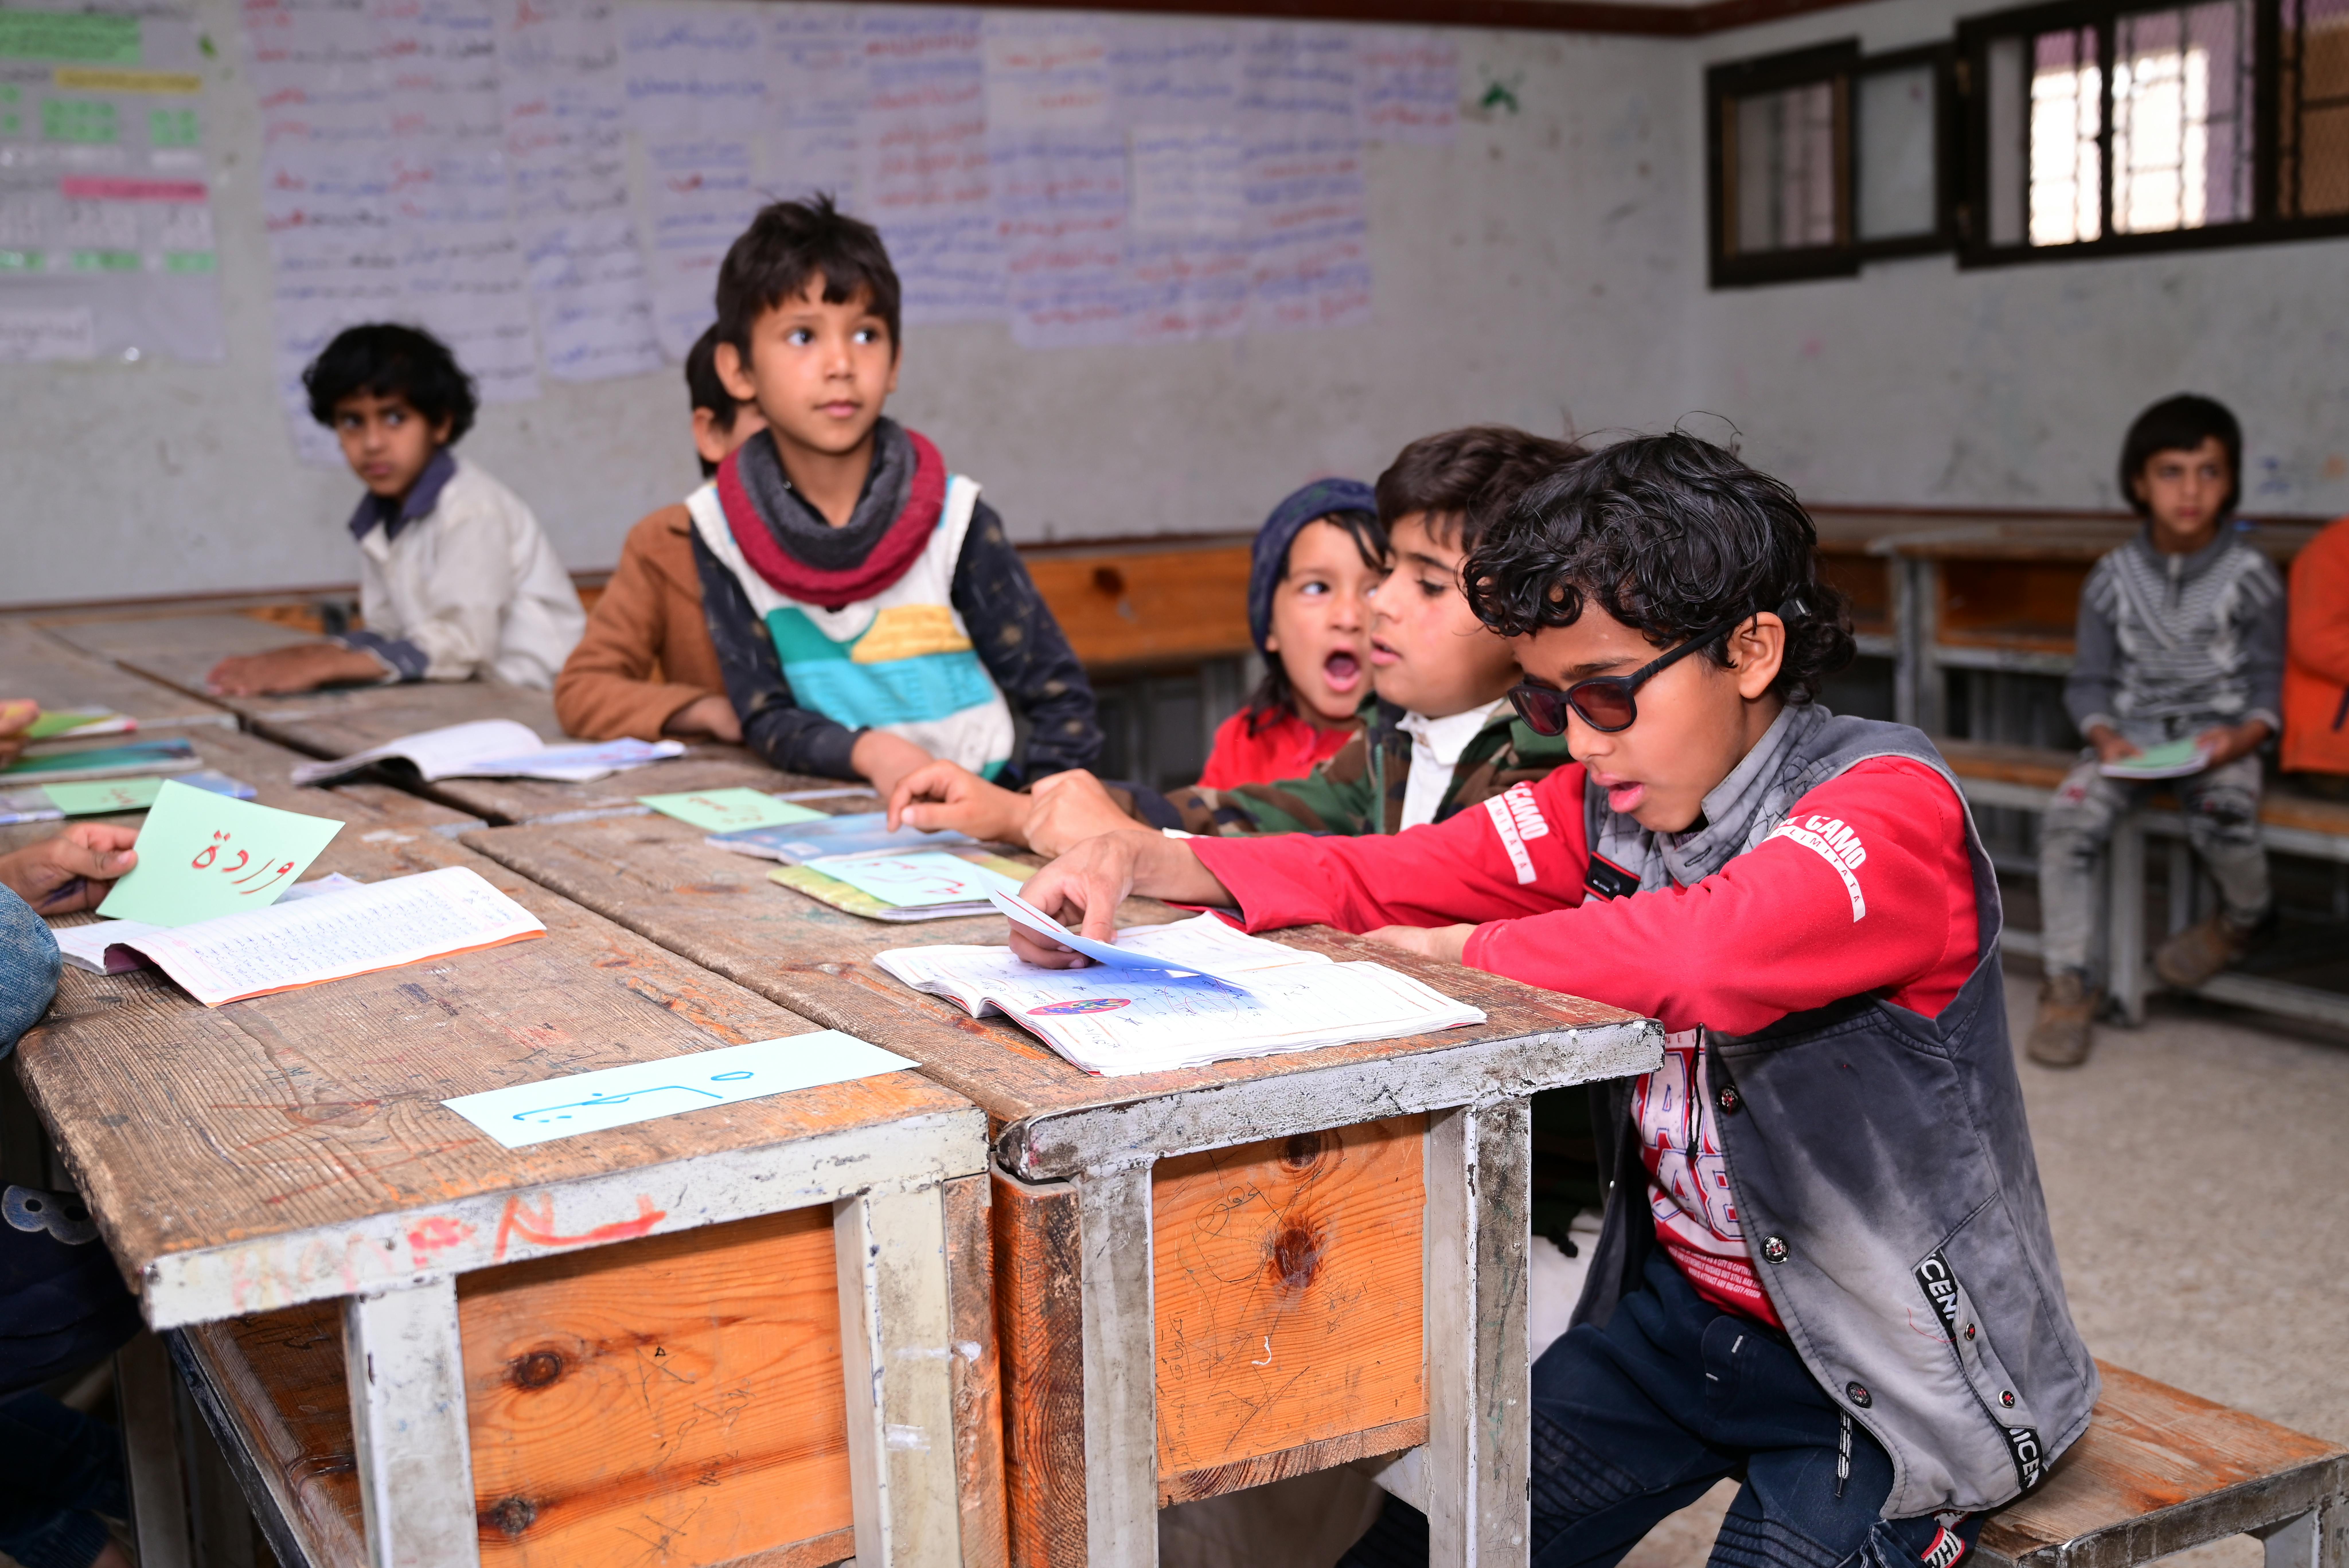 Rakan Al Qadhi è seduto al banco, vicino ai compagni di classe, durante una lezione nella scuola di Al Gardai, Sana’a in Yemen.